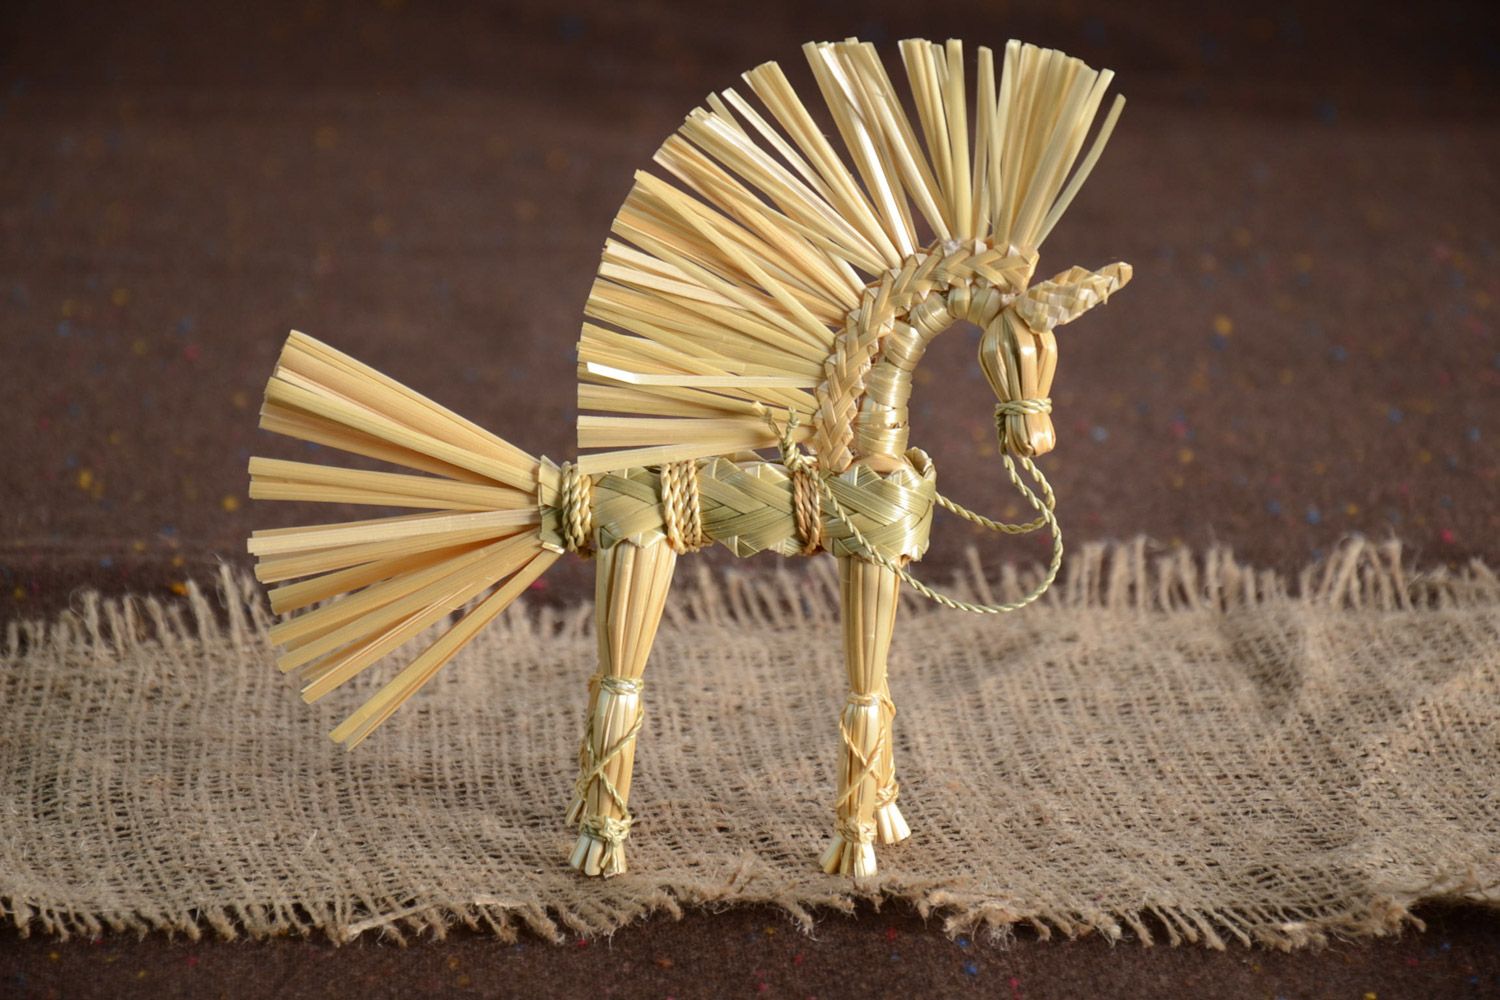 Handmade Spielzeug aus Stroh in Form von geflochtenem Pferd slawisch klein schön foto 1